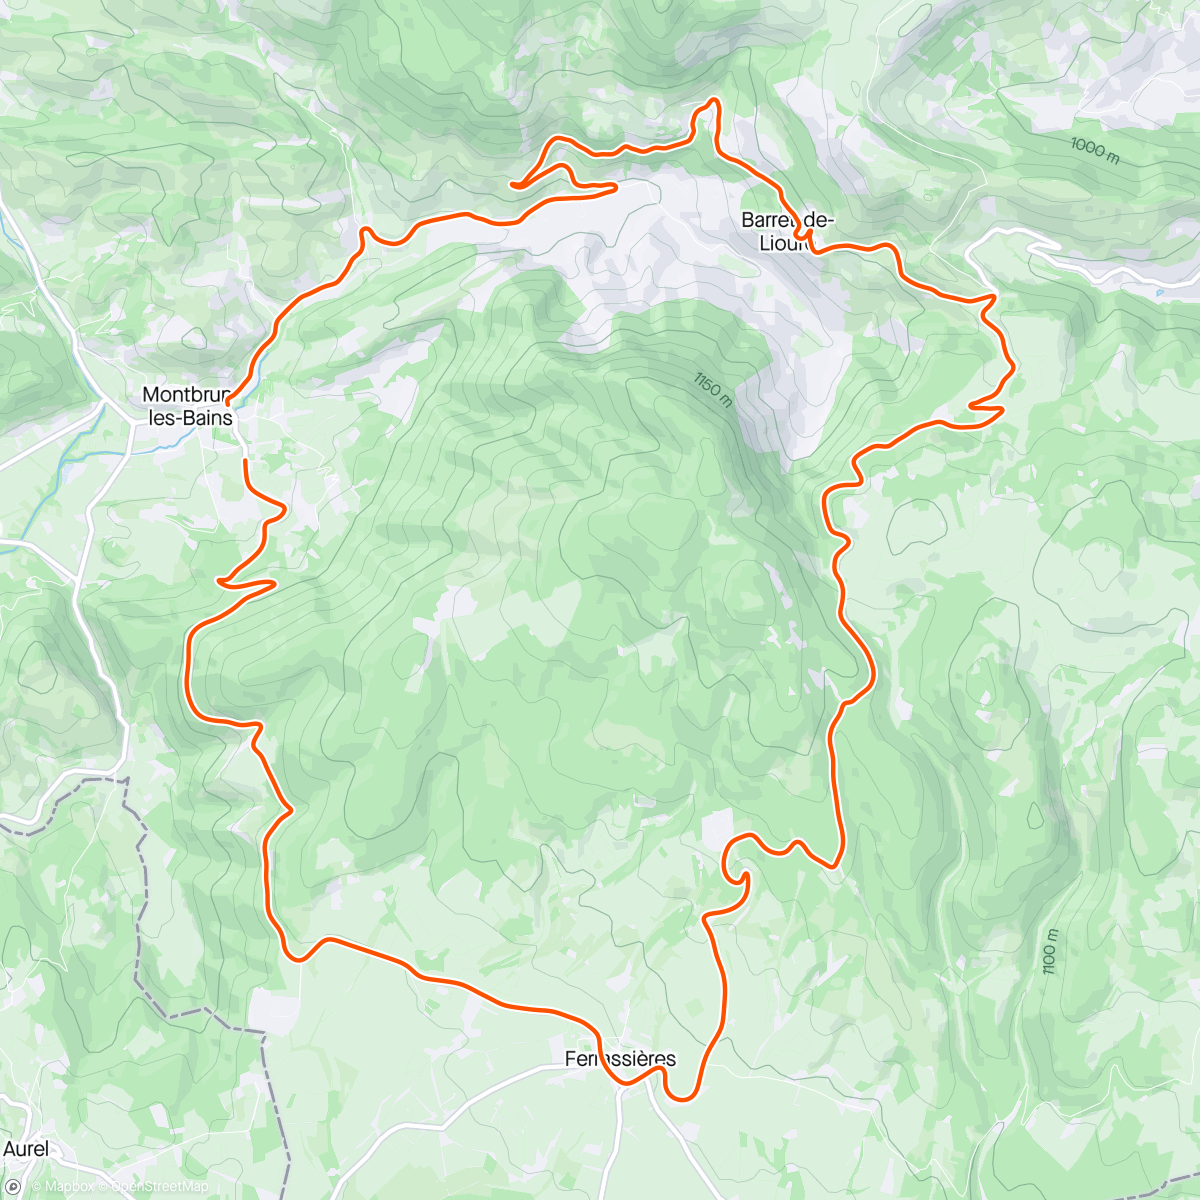 「Provence - Col de l’Homme Mort, Montbrun-les-Bains」活動的地圖